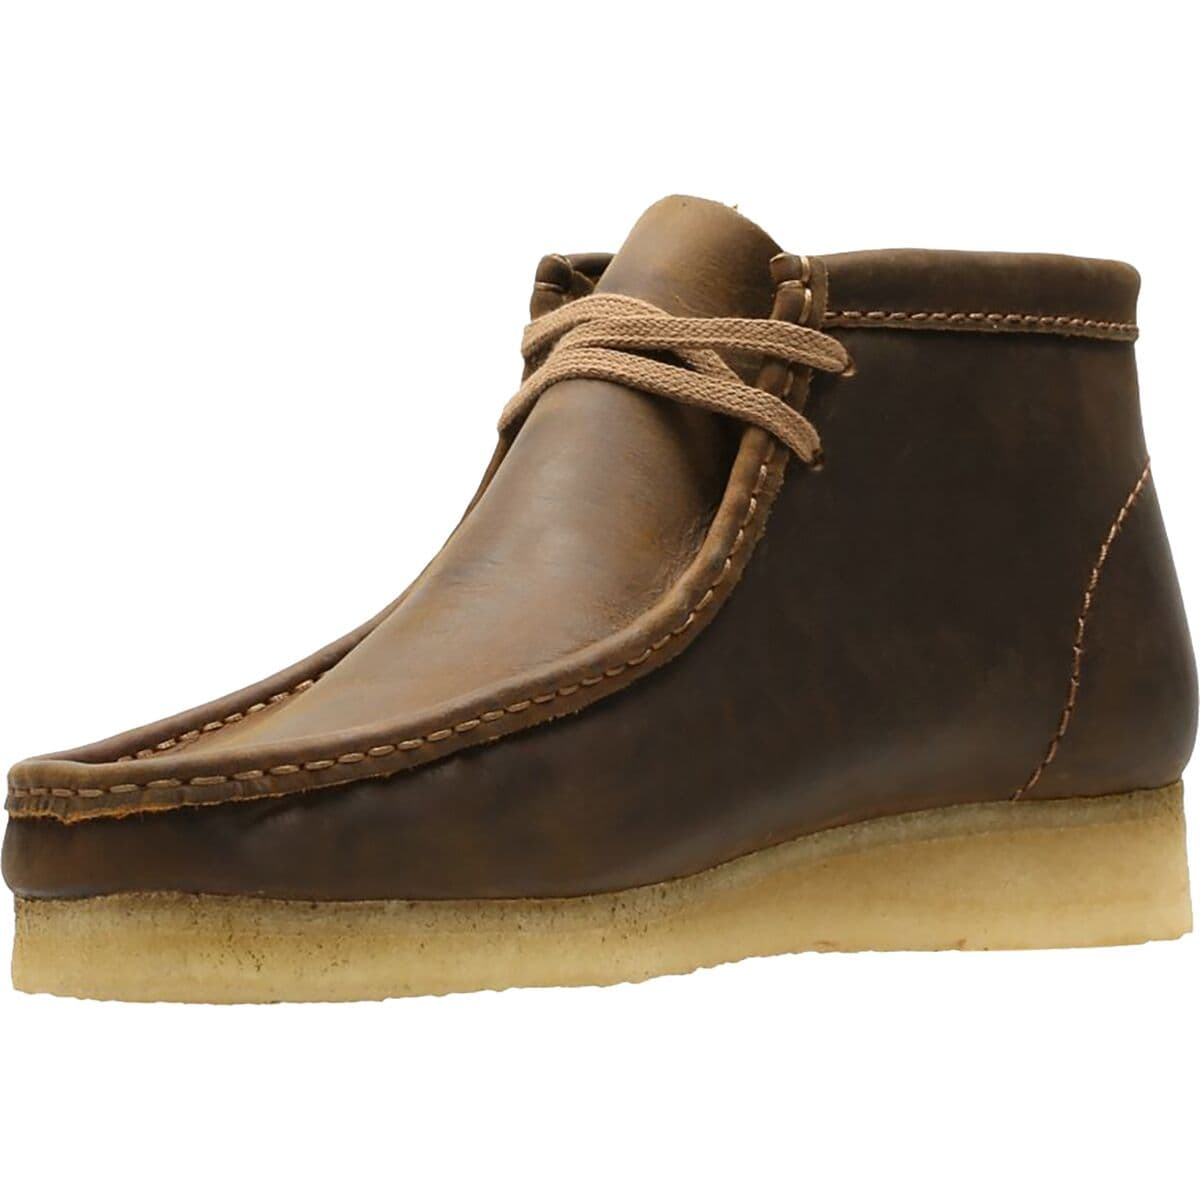 Clarks Wallabee Boot - Men's - Footwear